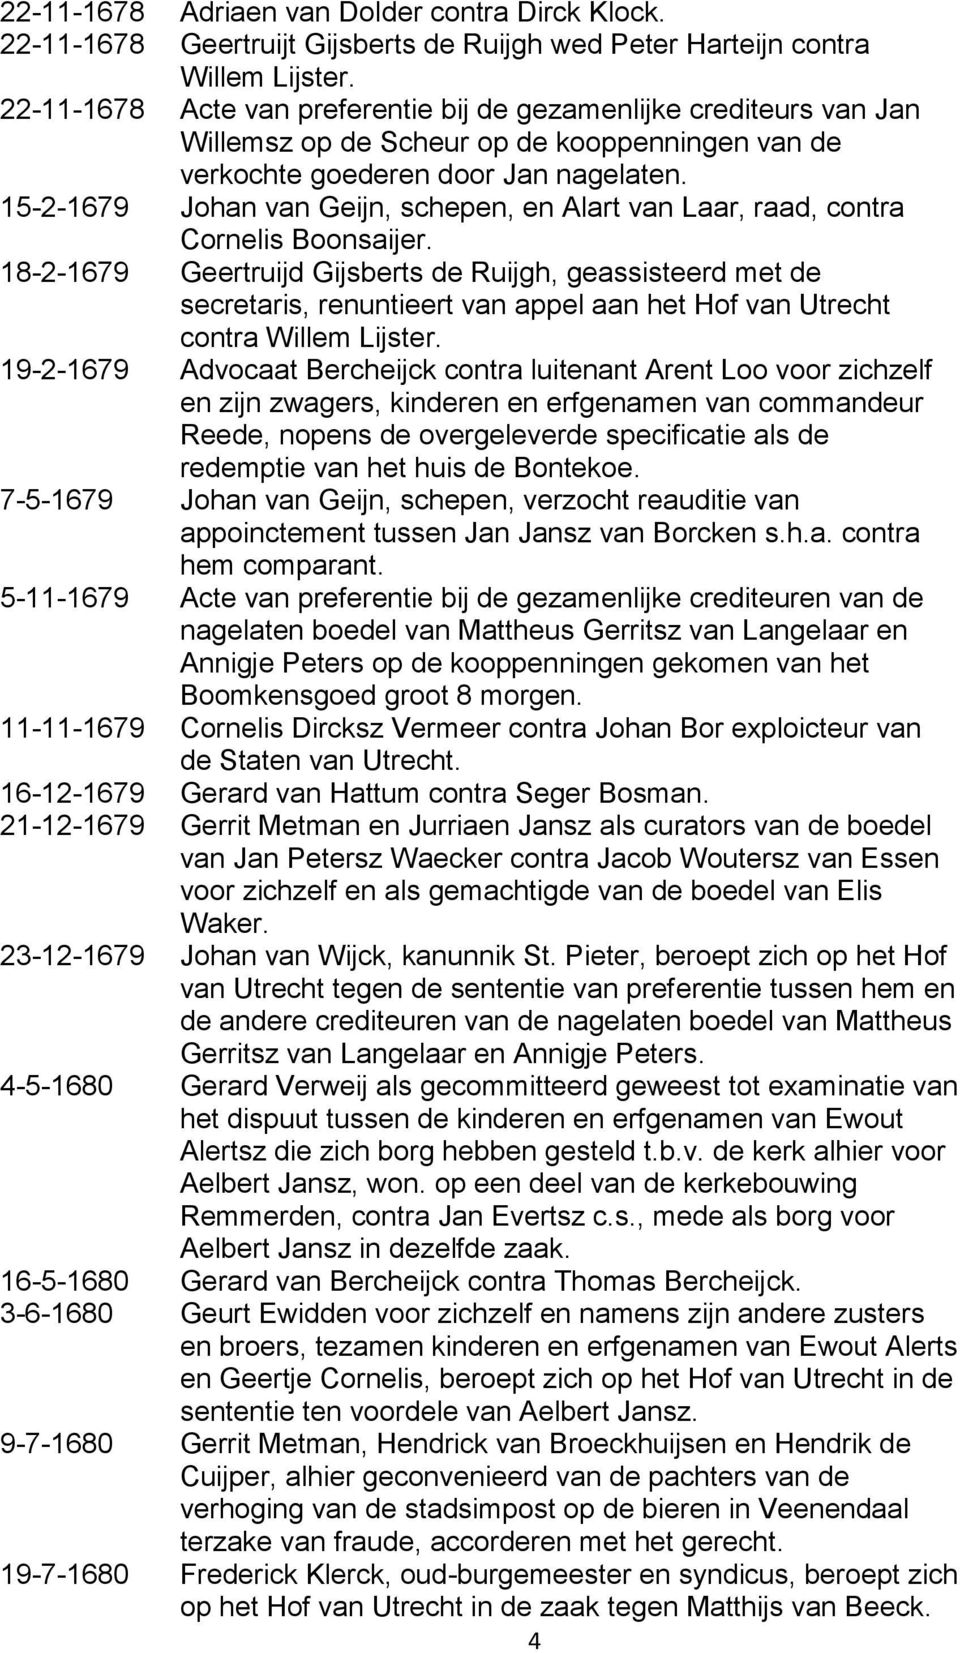 15-2-1679 Johan van Geijn, schepen, en Alart van Laar, raad, contra Cornelis Boonsaijer.